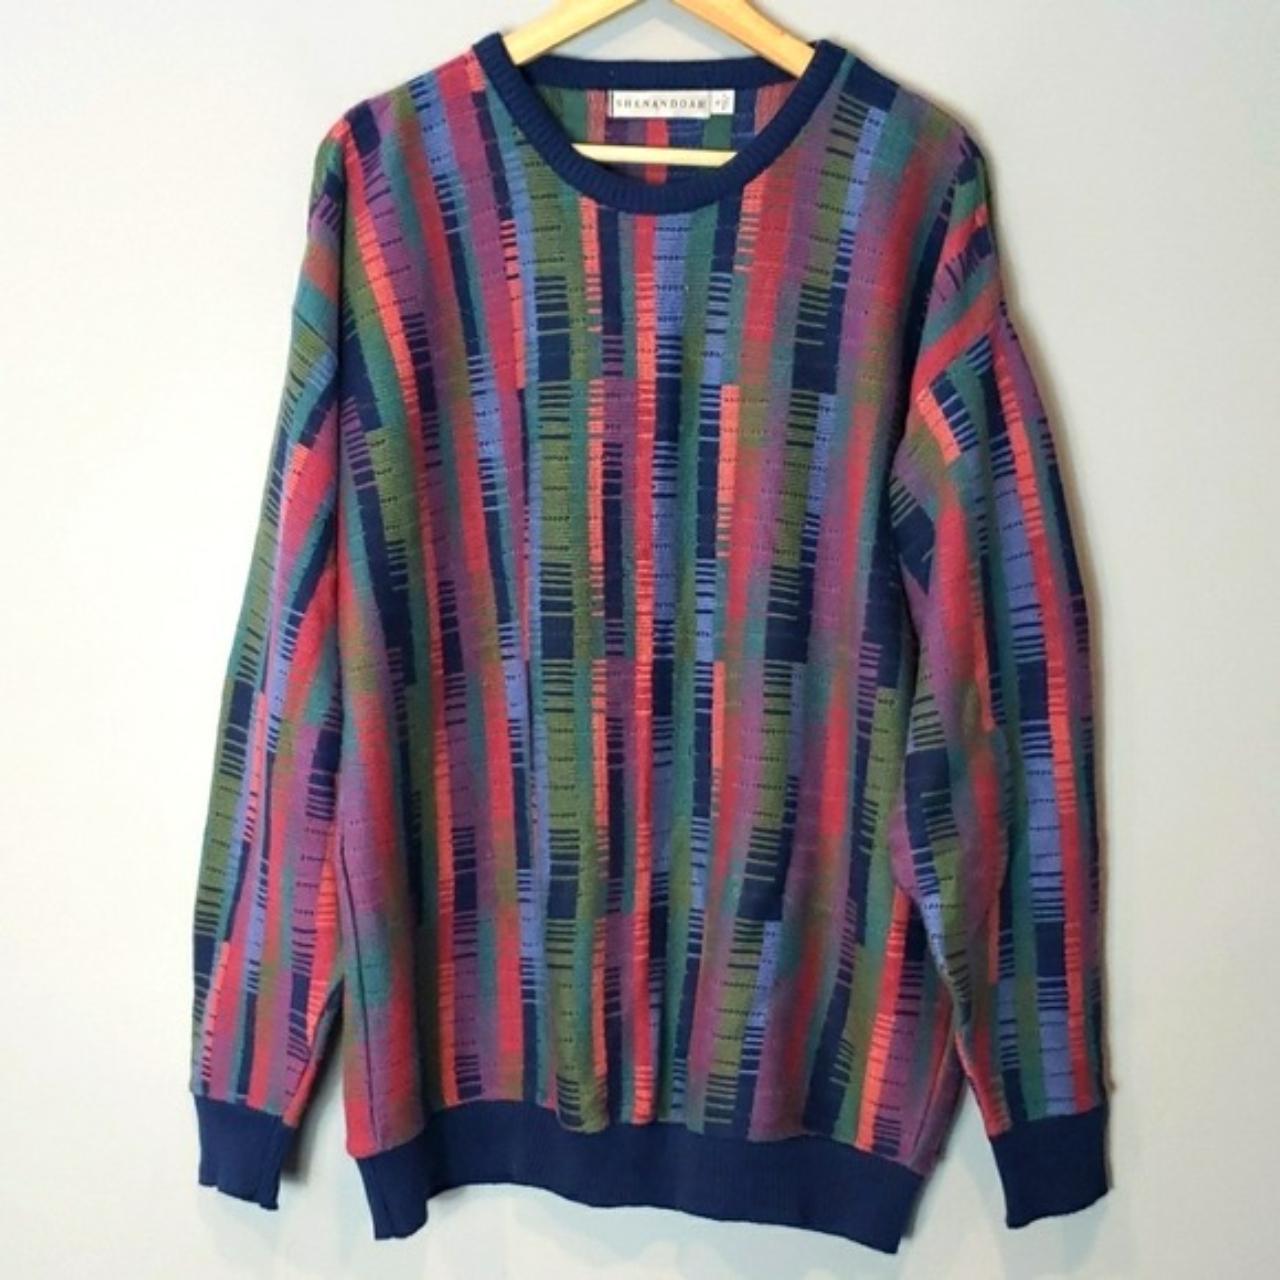 Vintage Sweater 100% Cotton Shenandoah Art Pop Made... - Depop